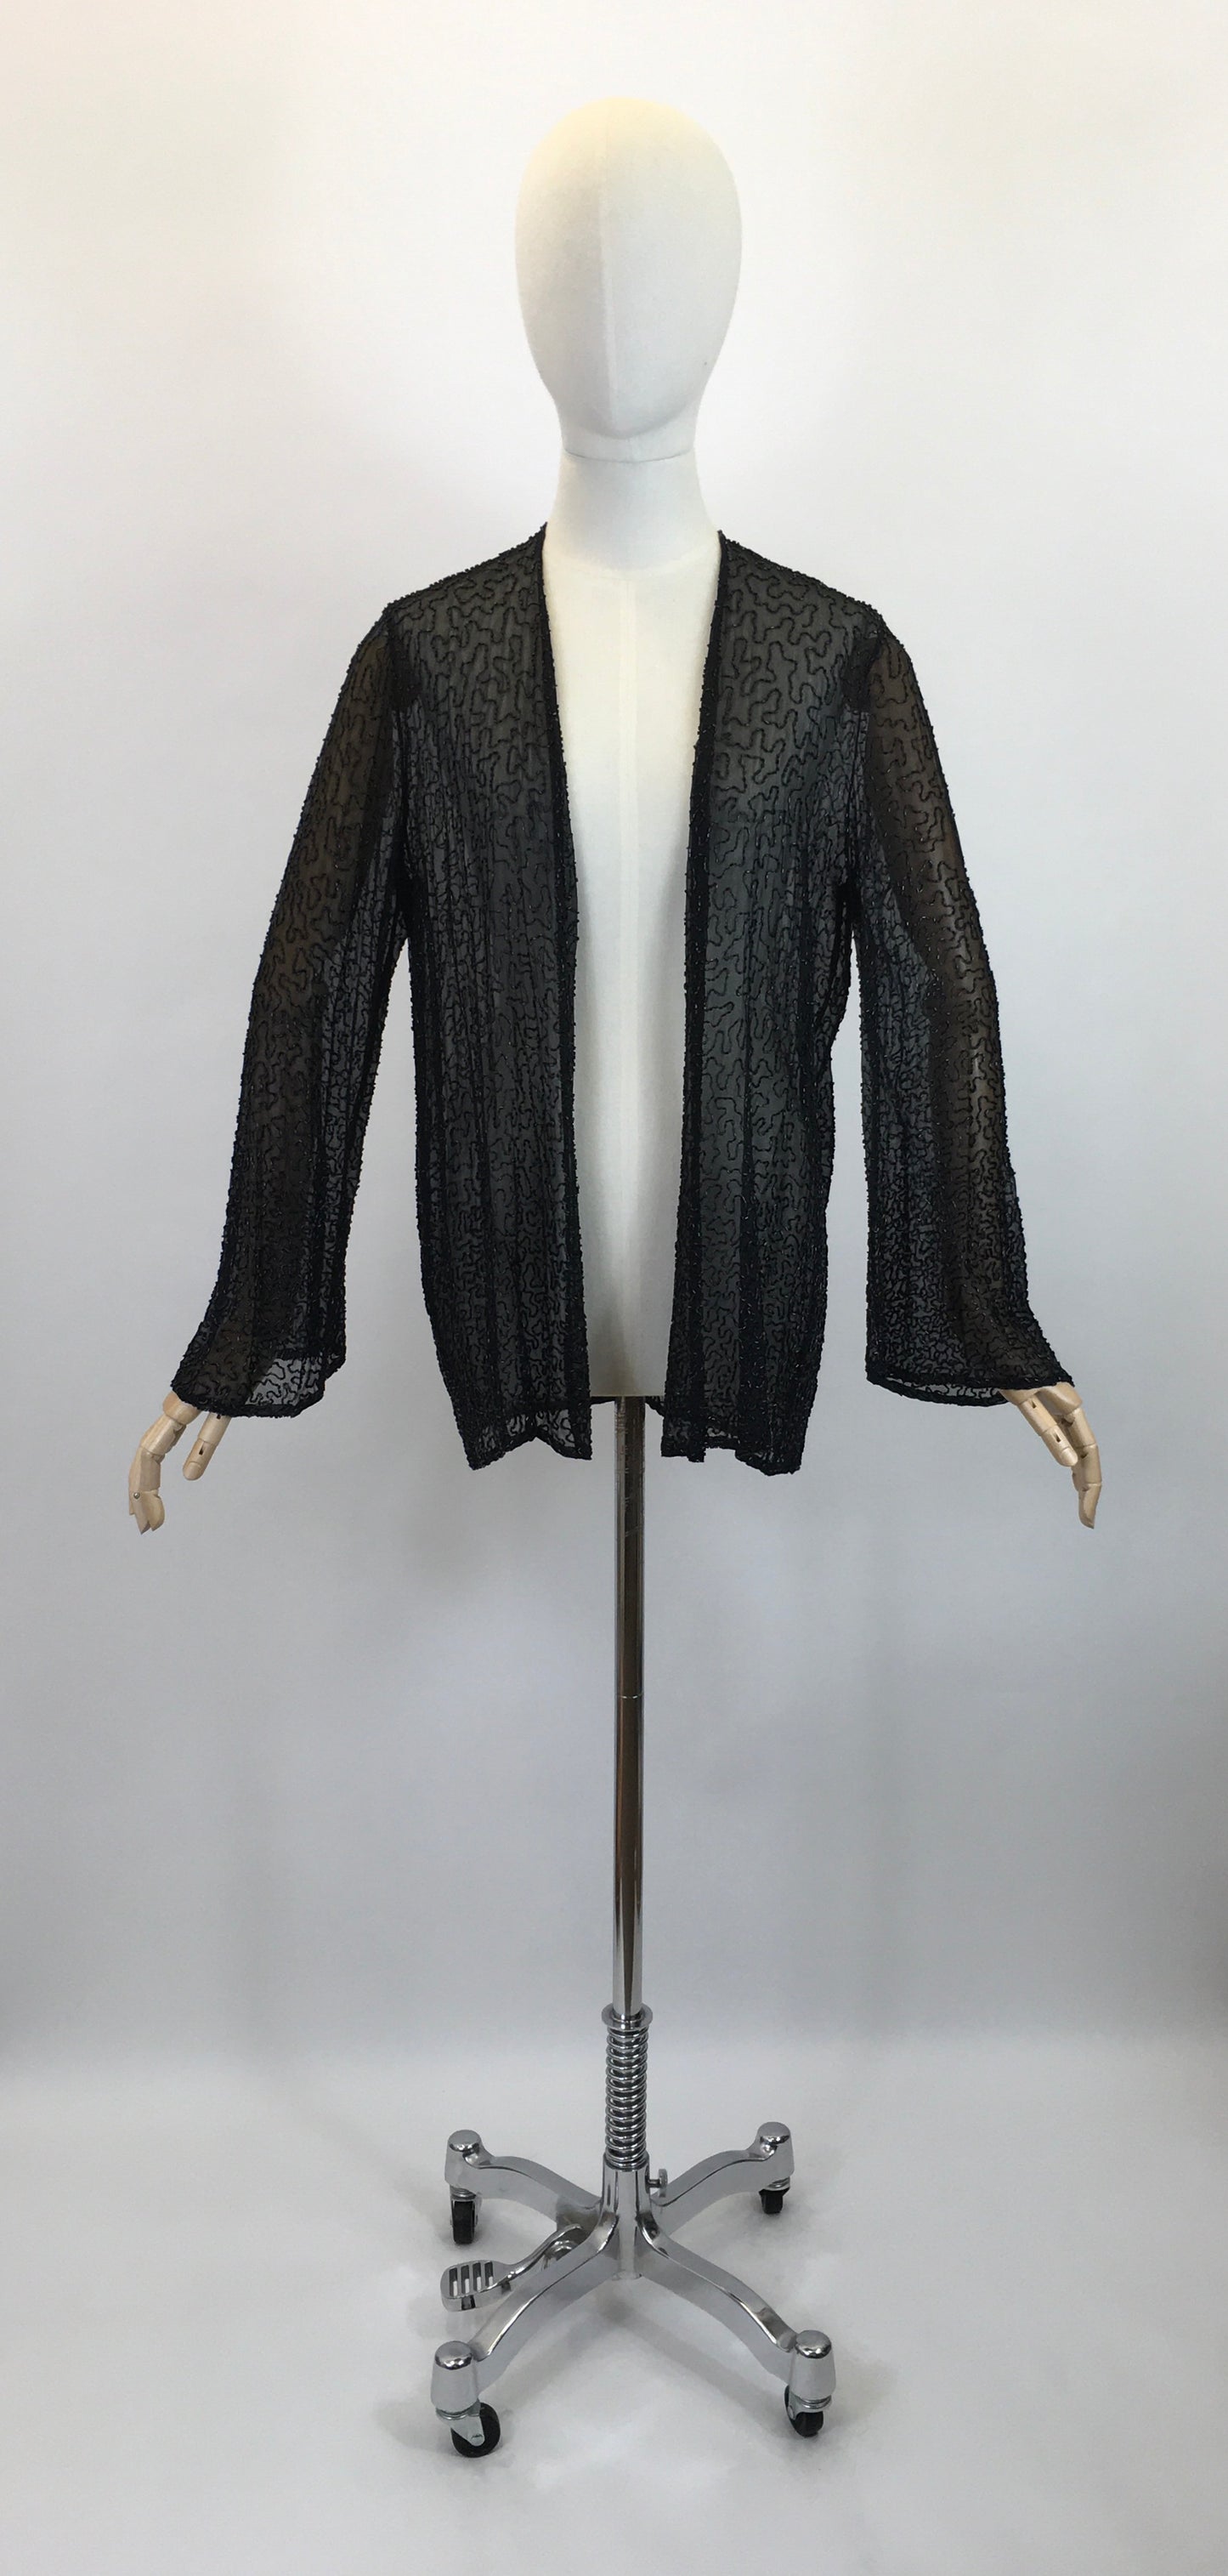 Original 1920's Sensational Evening Jacket - Embellished in Black Bugle Beadwork